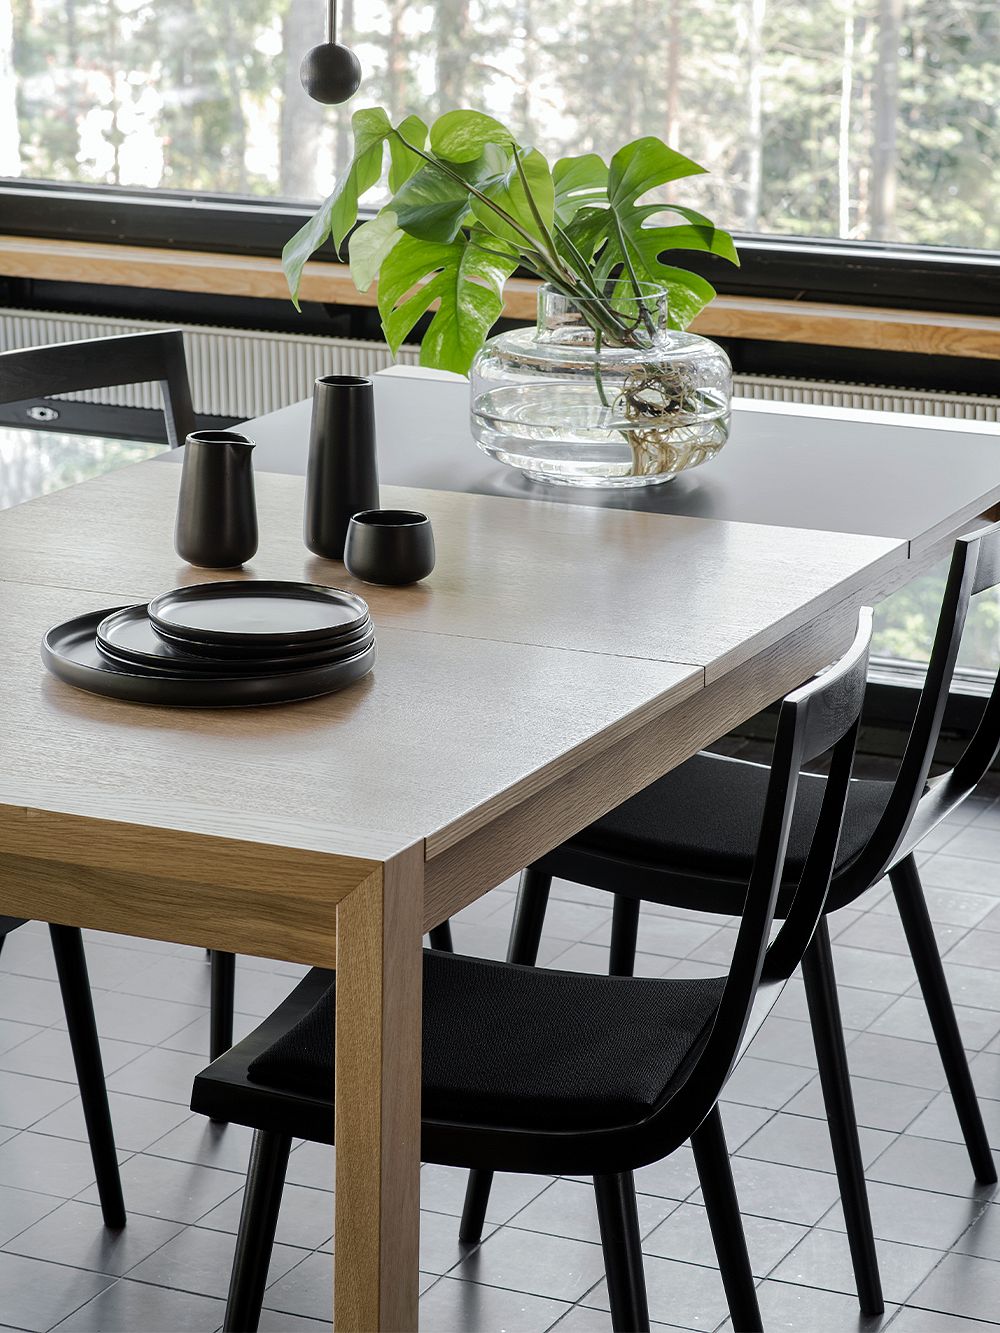 Tapio Anttila Collectionin Jat-ko-tuokapöydän ympärillä Viiva-tuolit. Pöydälle on nostettu lasimaljakko, jossa vihreitä peikonlehden oksia, sekä mustia keraamisia astioita.